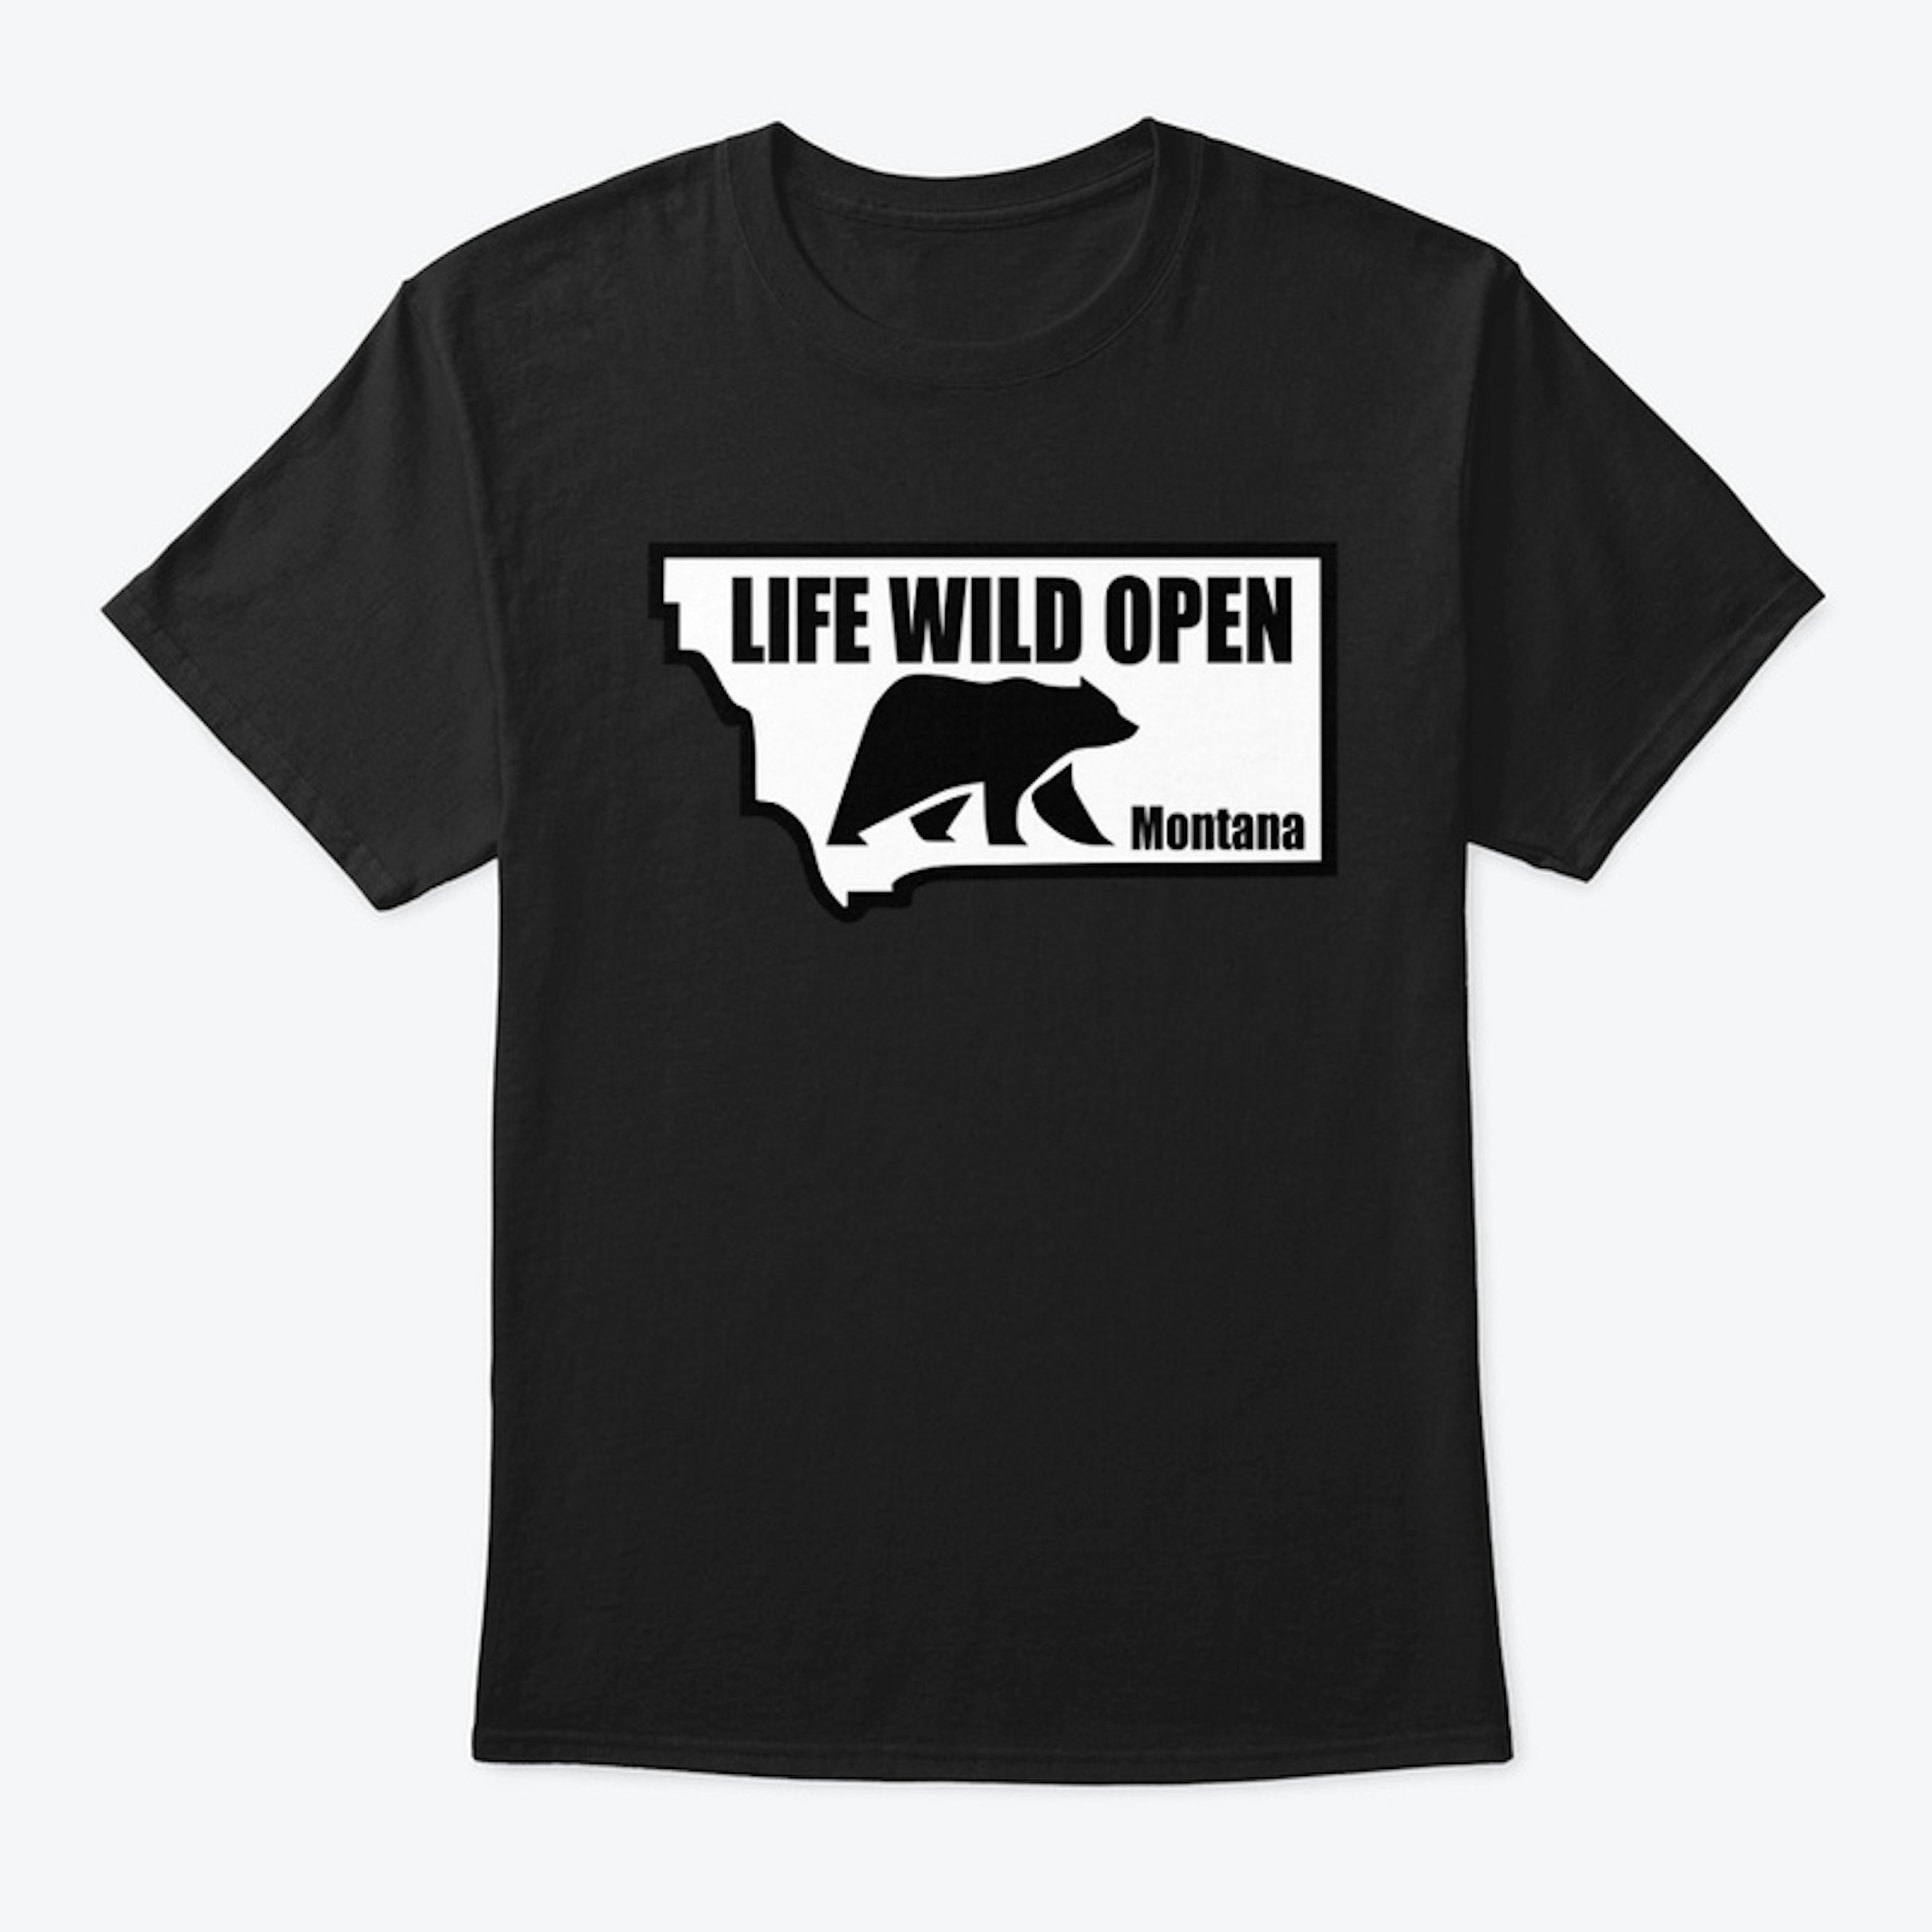 Life Wild Open